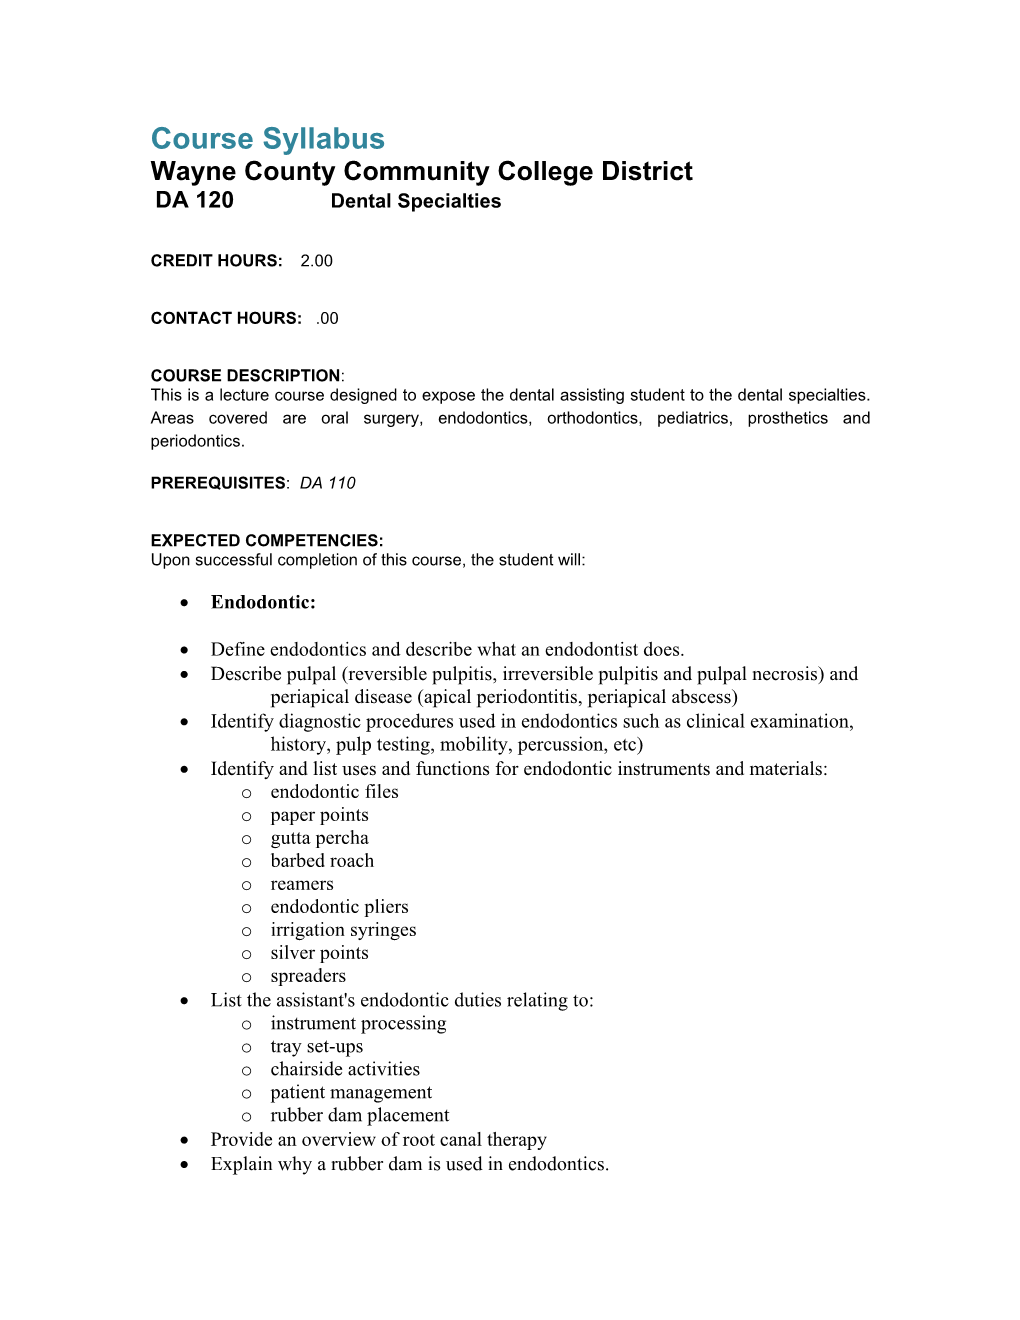 Course Syllabus Wayne County Community College District DA 120 Dental Specialties